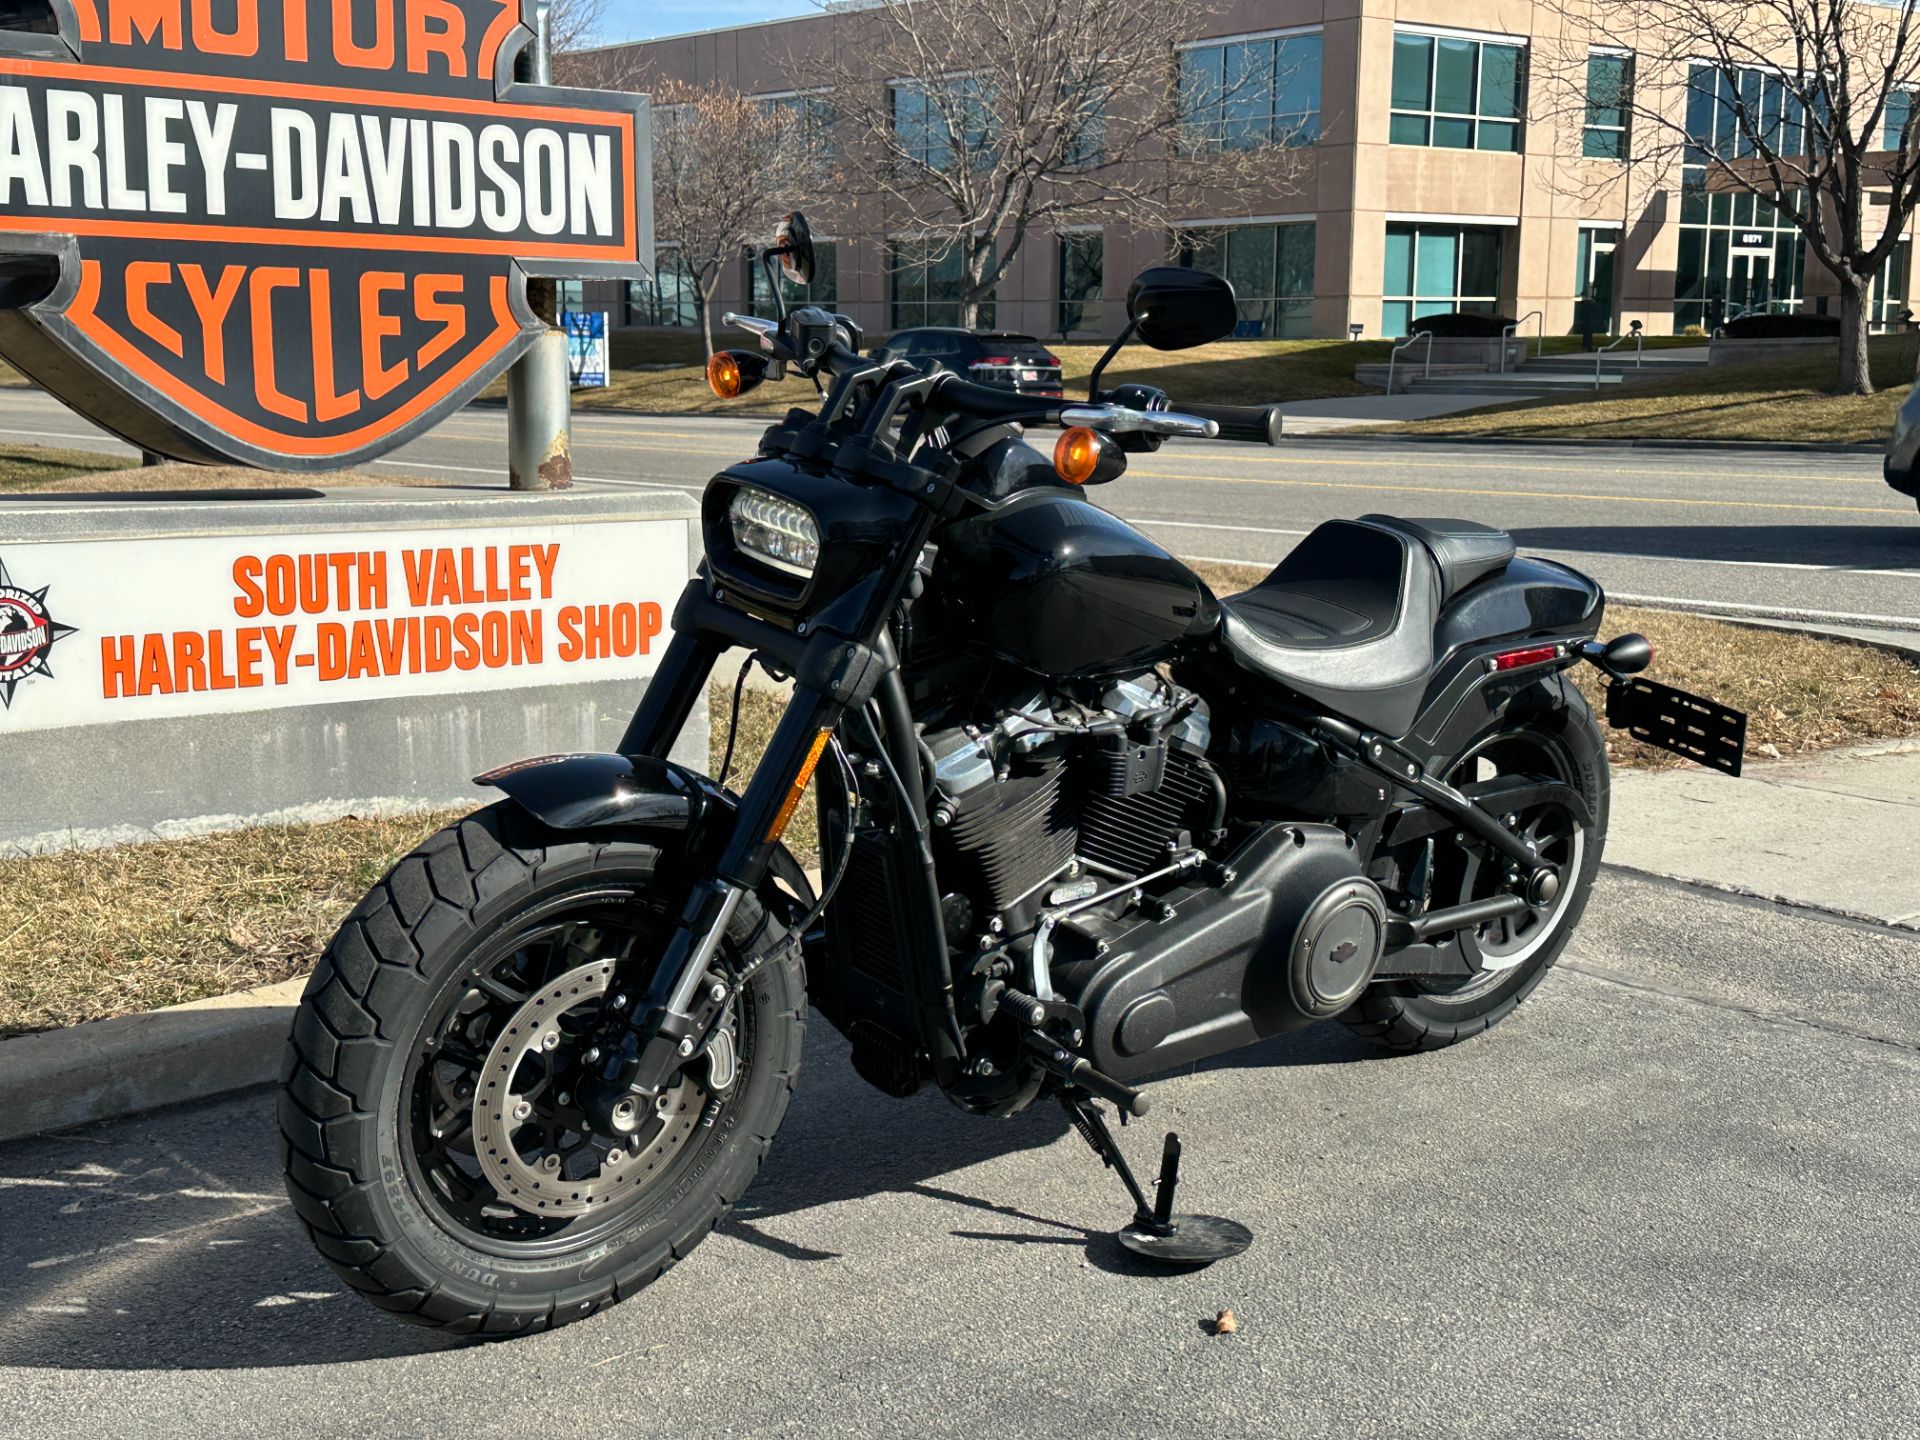 2018 Harley-Davidson Fat Bob® 107 in Sandy, Utah - Photo 8